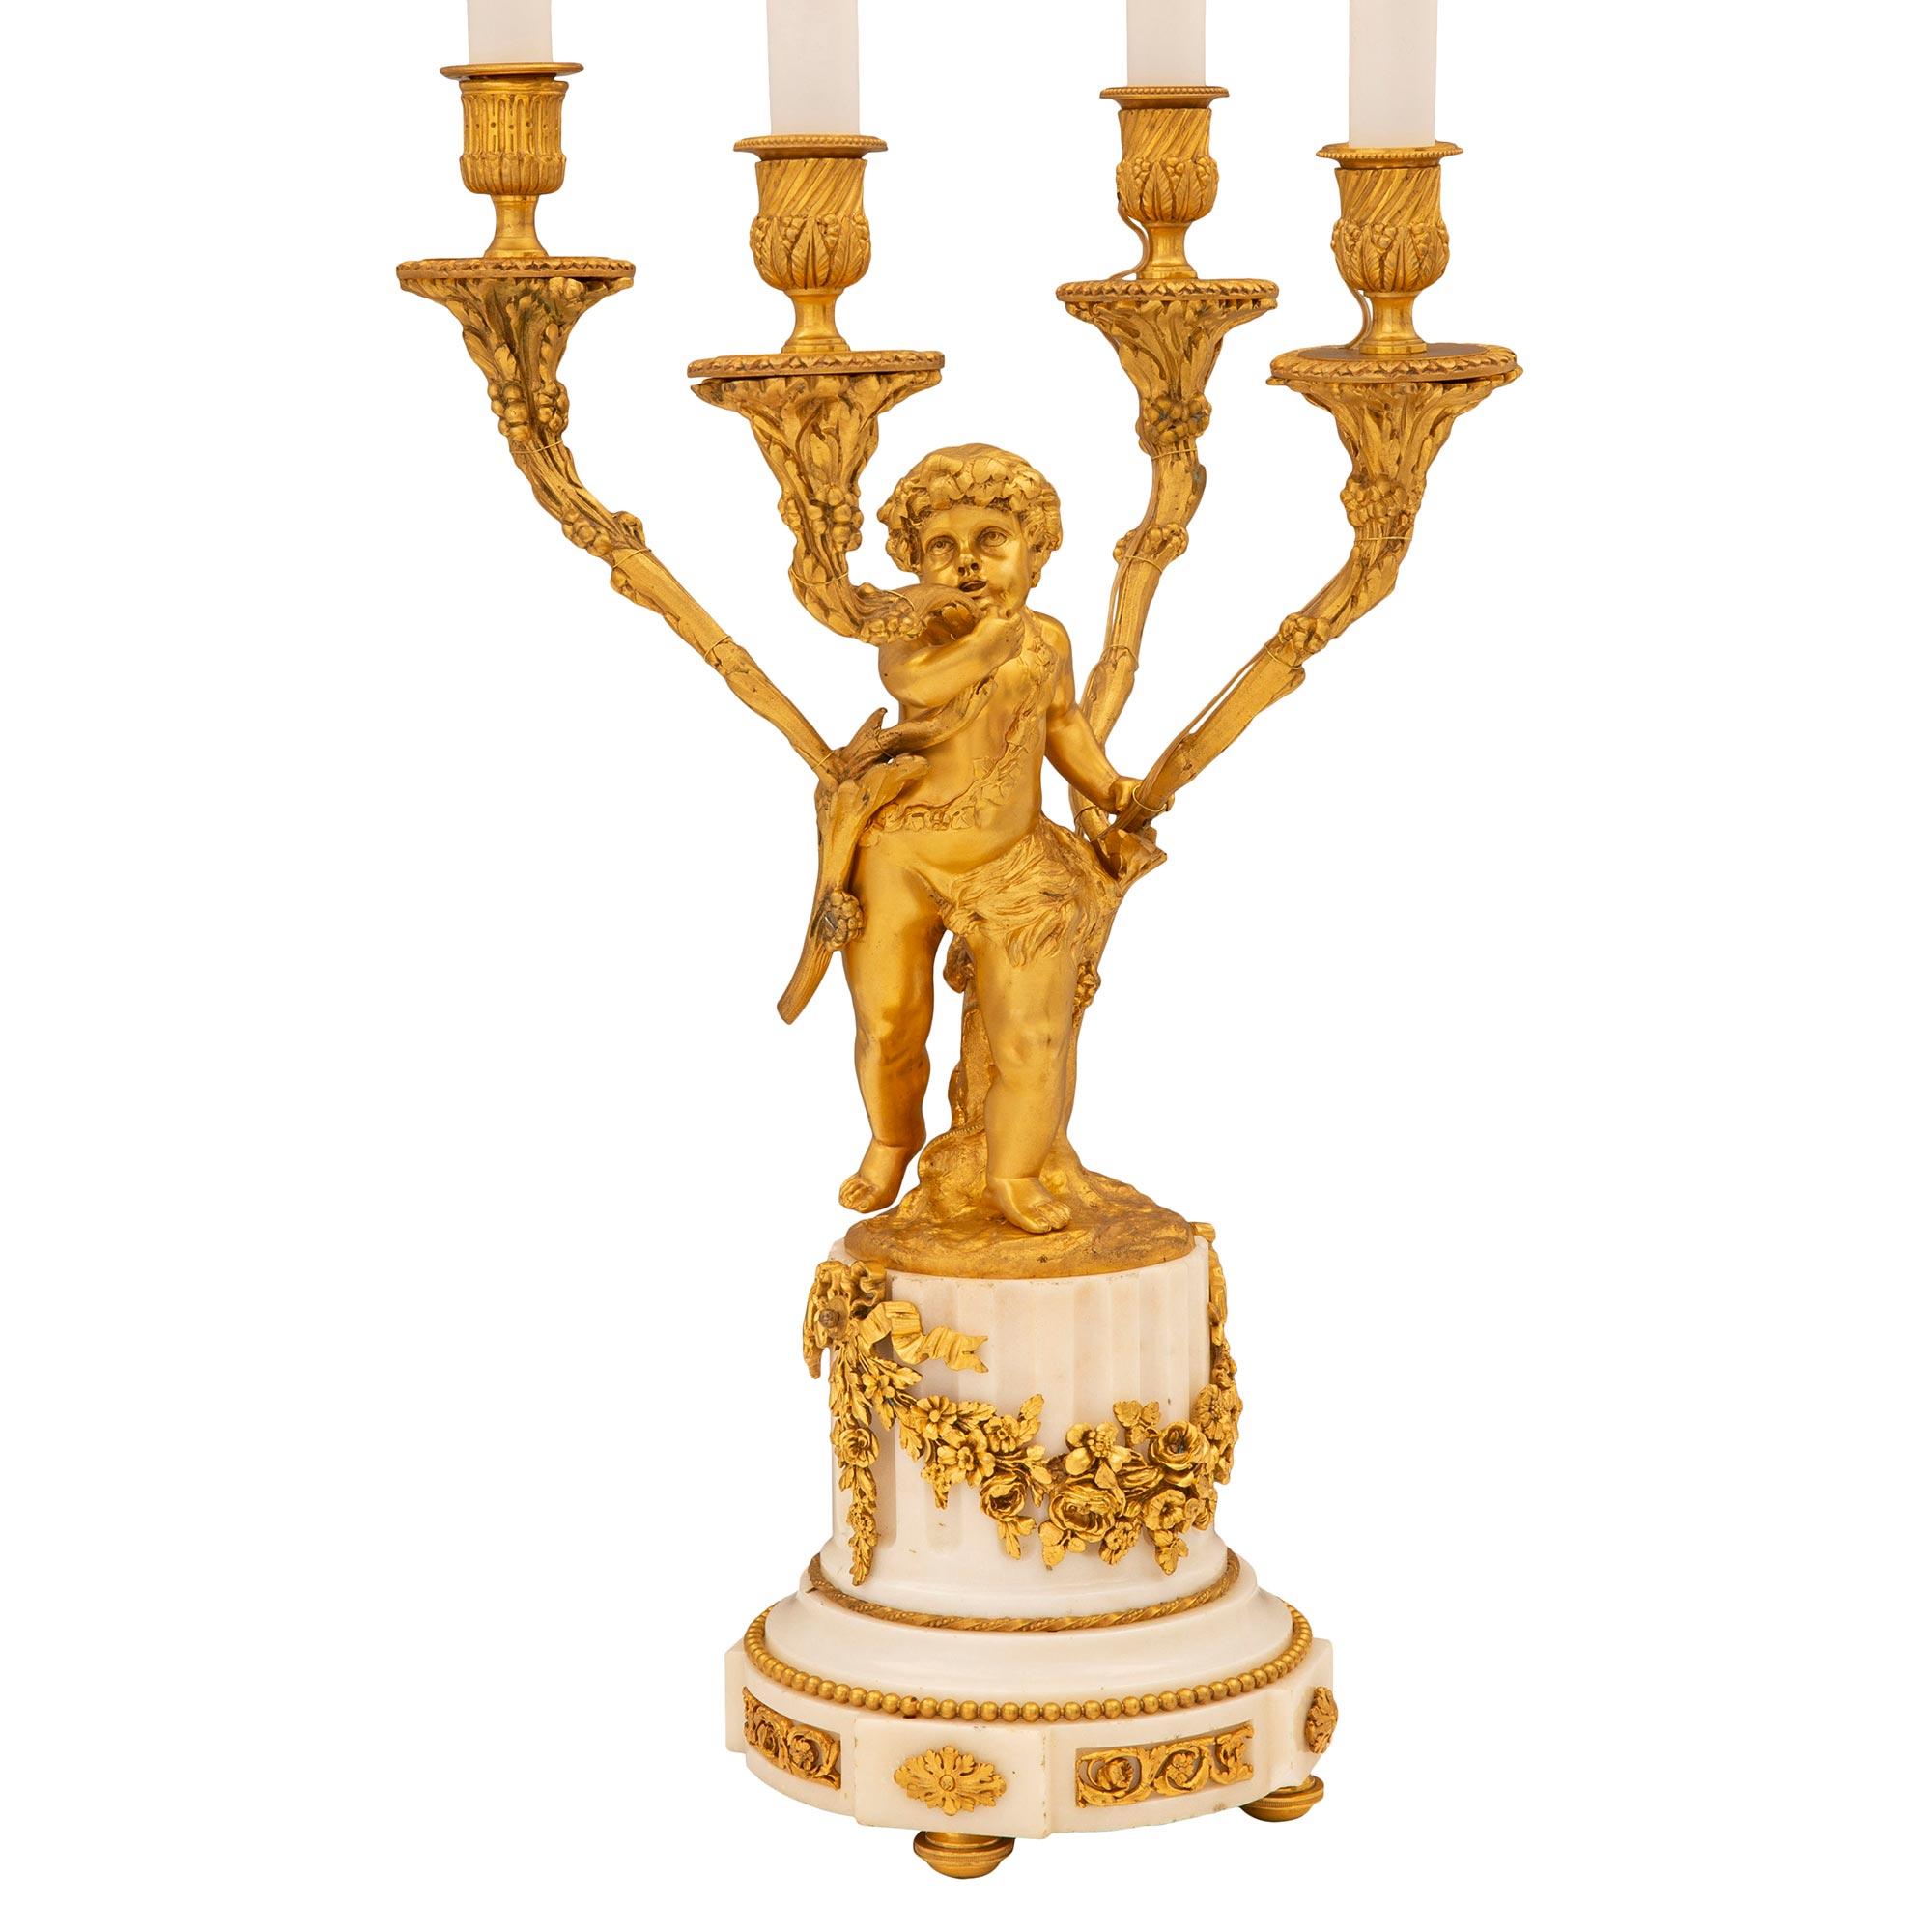 Une charmante et extrêmement élégante lampe candélabre française du 19ème siècle de style Louis XVI en bronze doré et marbre blanc de Carrare. La lampe à quatre bras est surélevée par de fins pieds en bronze doré sous une base circulaire cannelée en